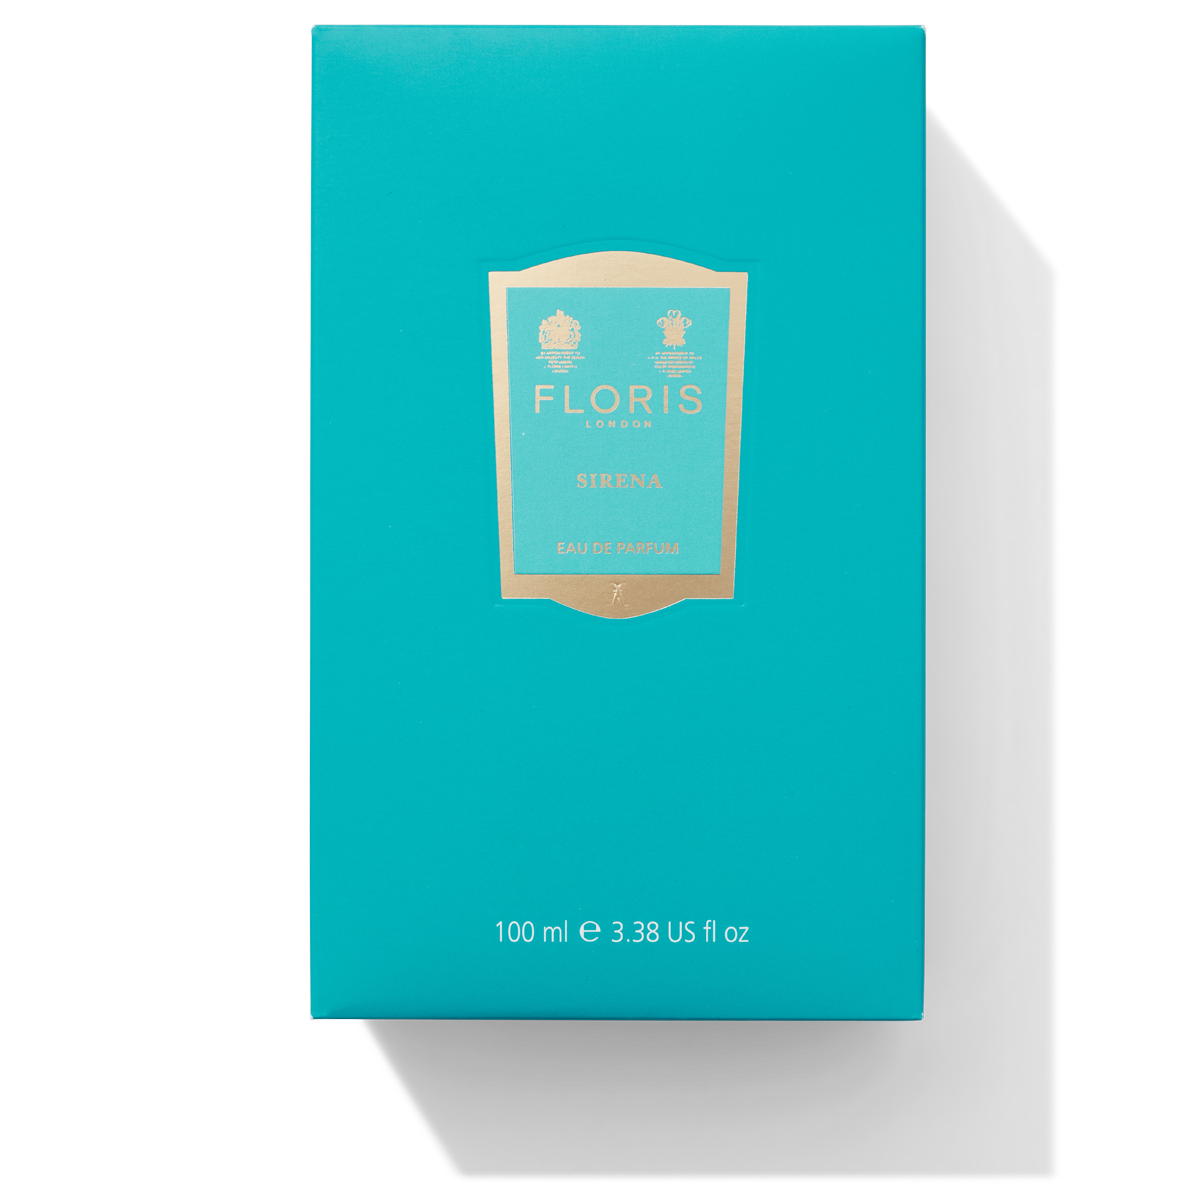 Floris London Sirena Eau de Parfum box for 100ml bottle